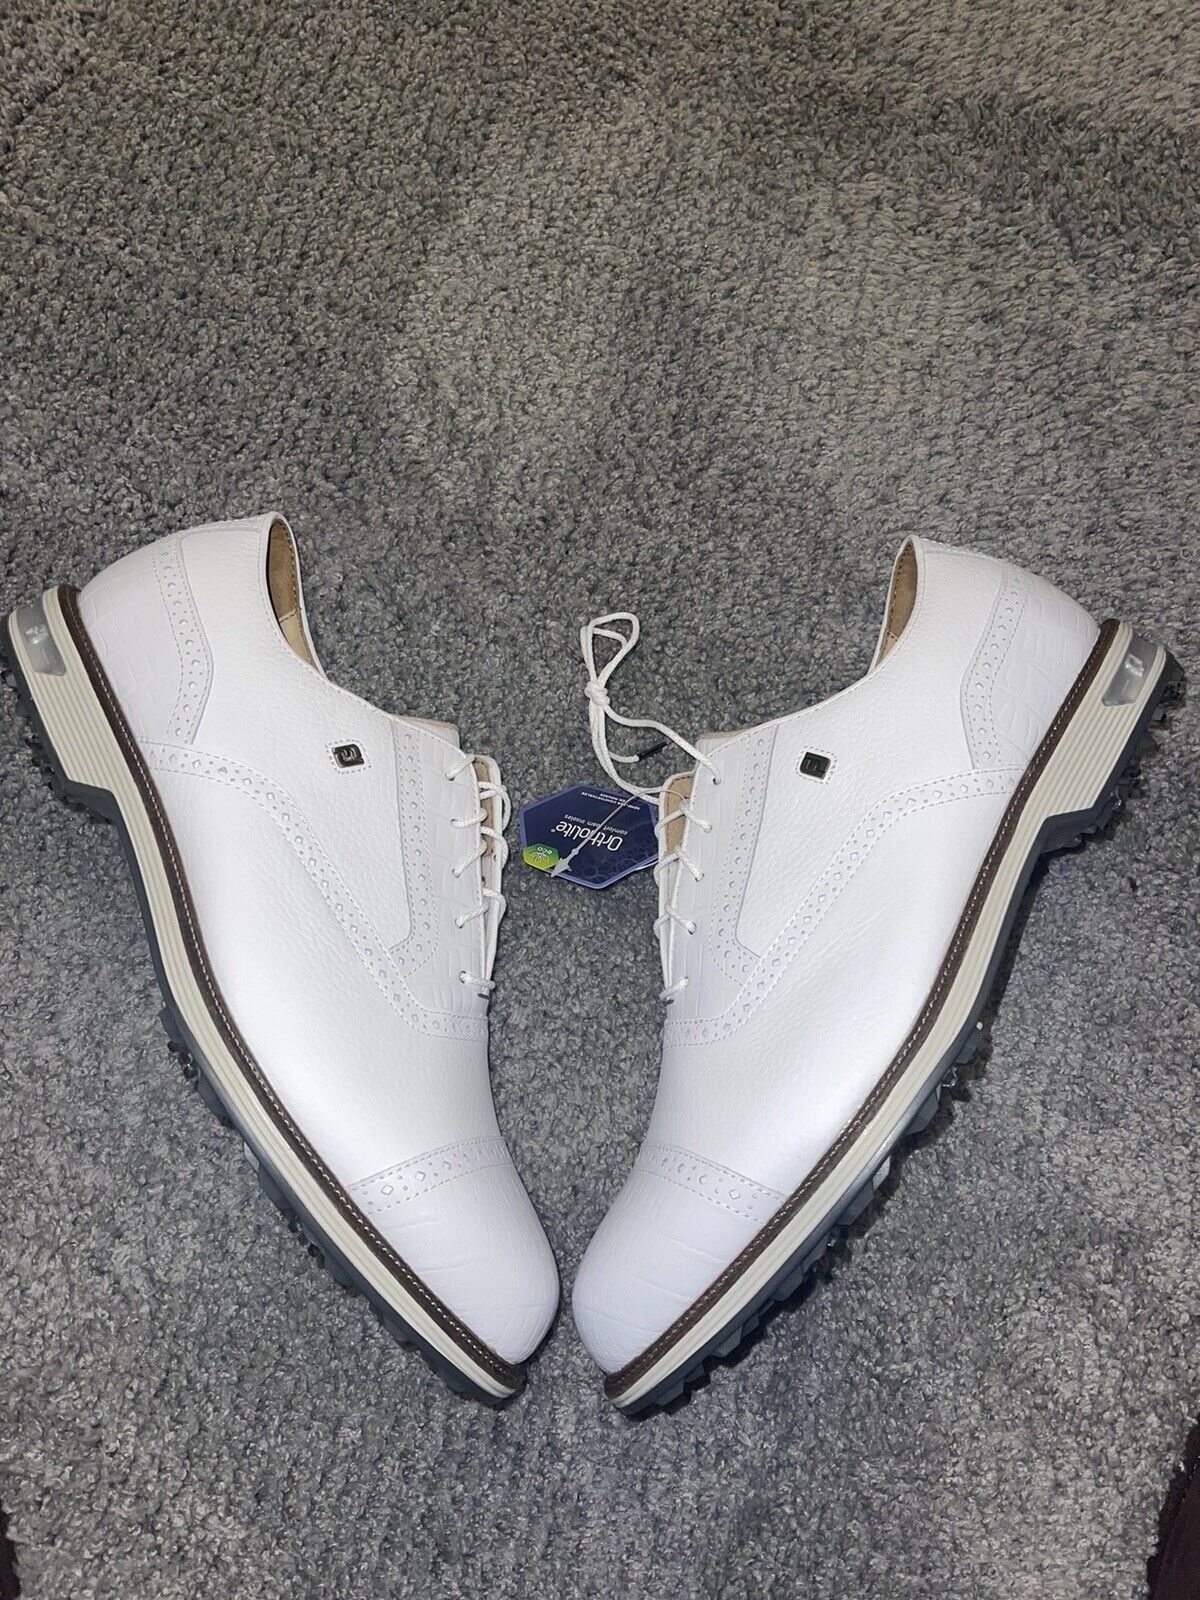 Footjoy Dryjoys Premier Tarlow Golf Shoes Size US 13XW Extra Wide